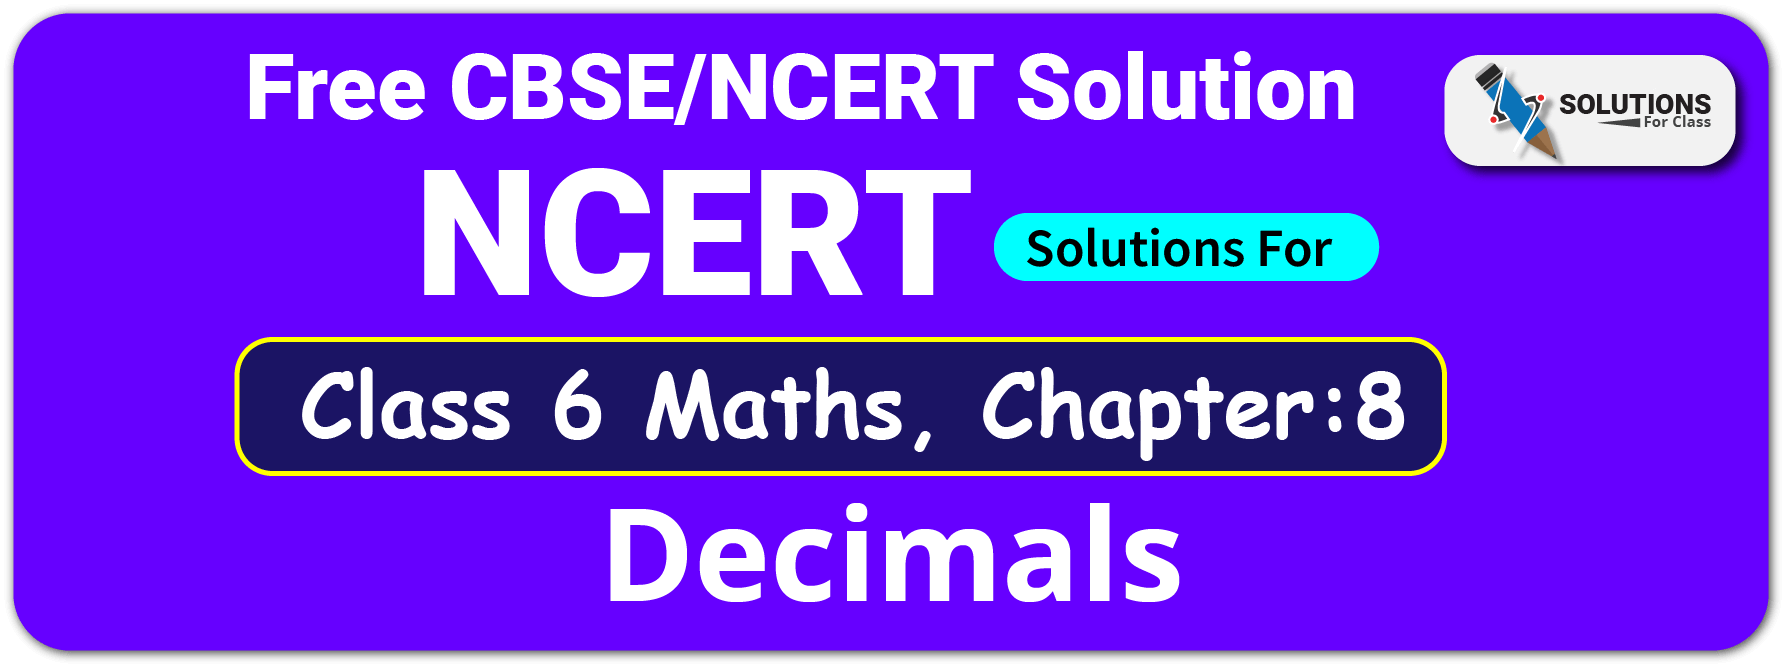 NCERT Solutions For Class 6 Maths Chapter 8 Decimals